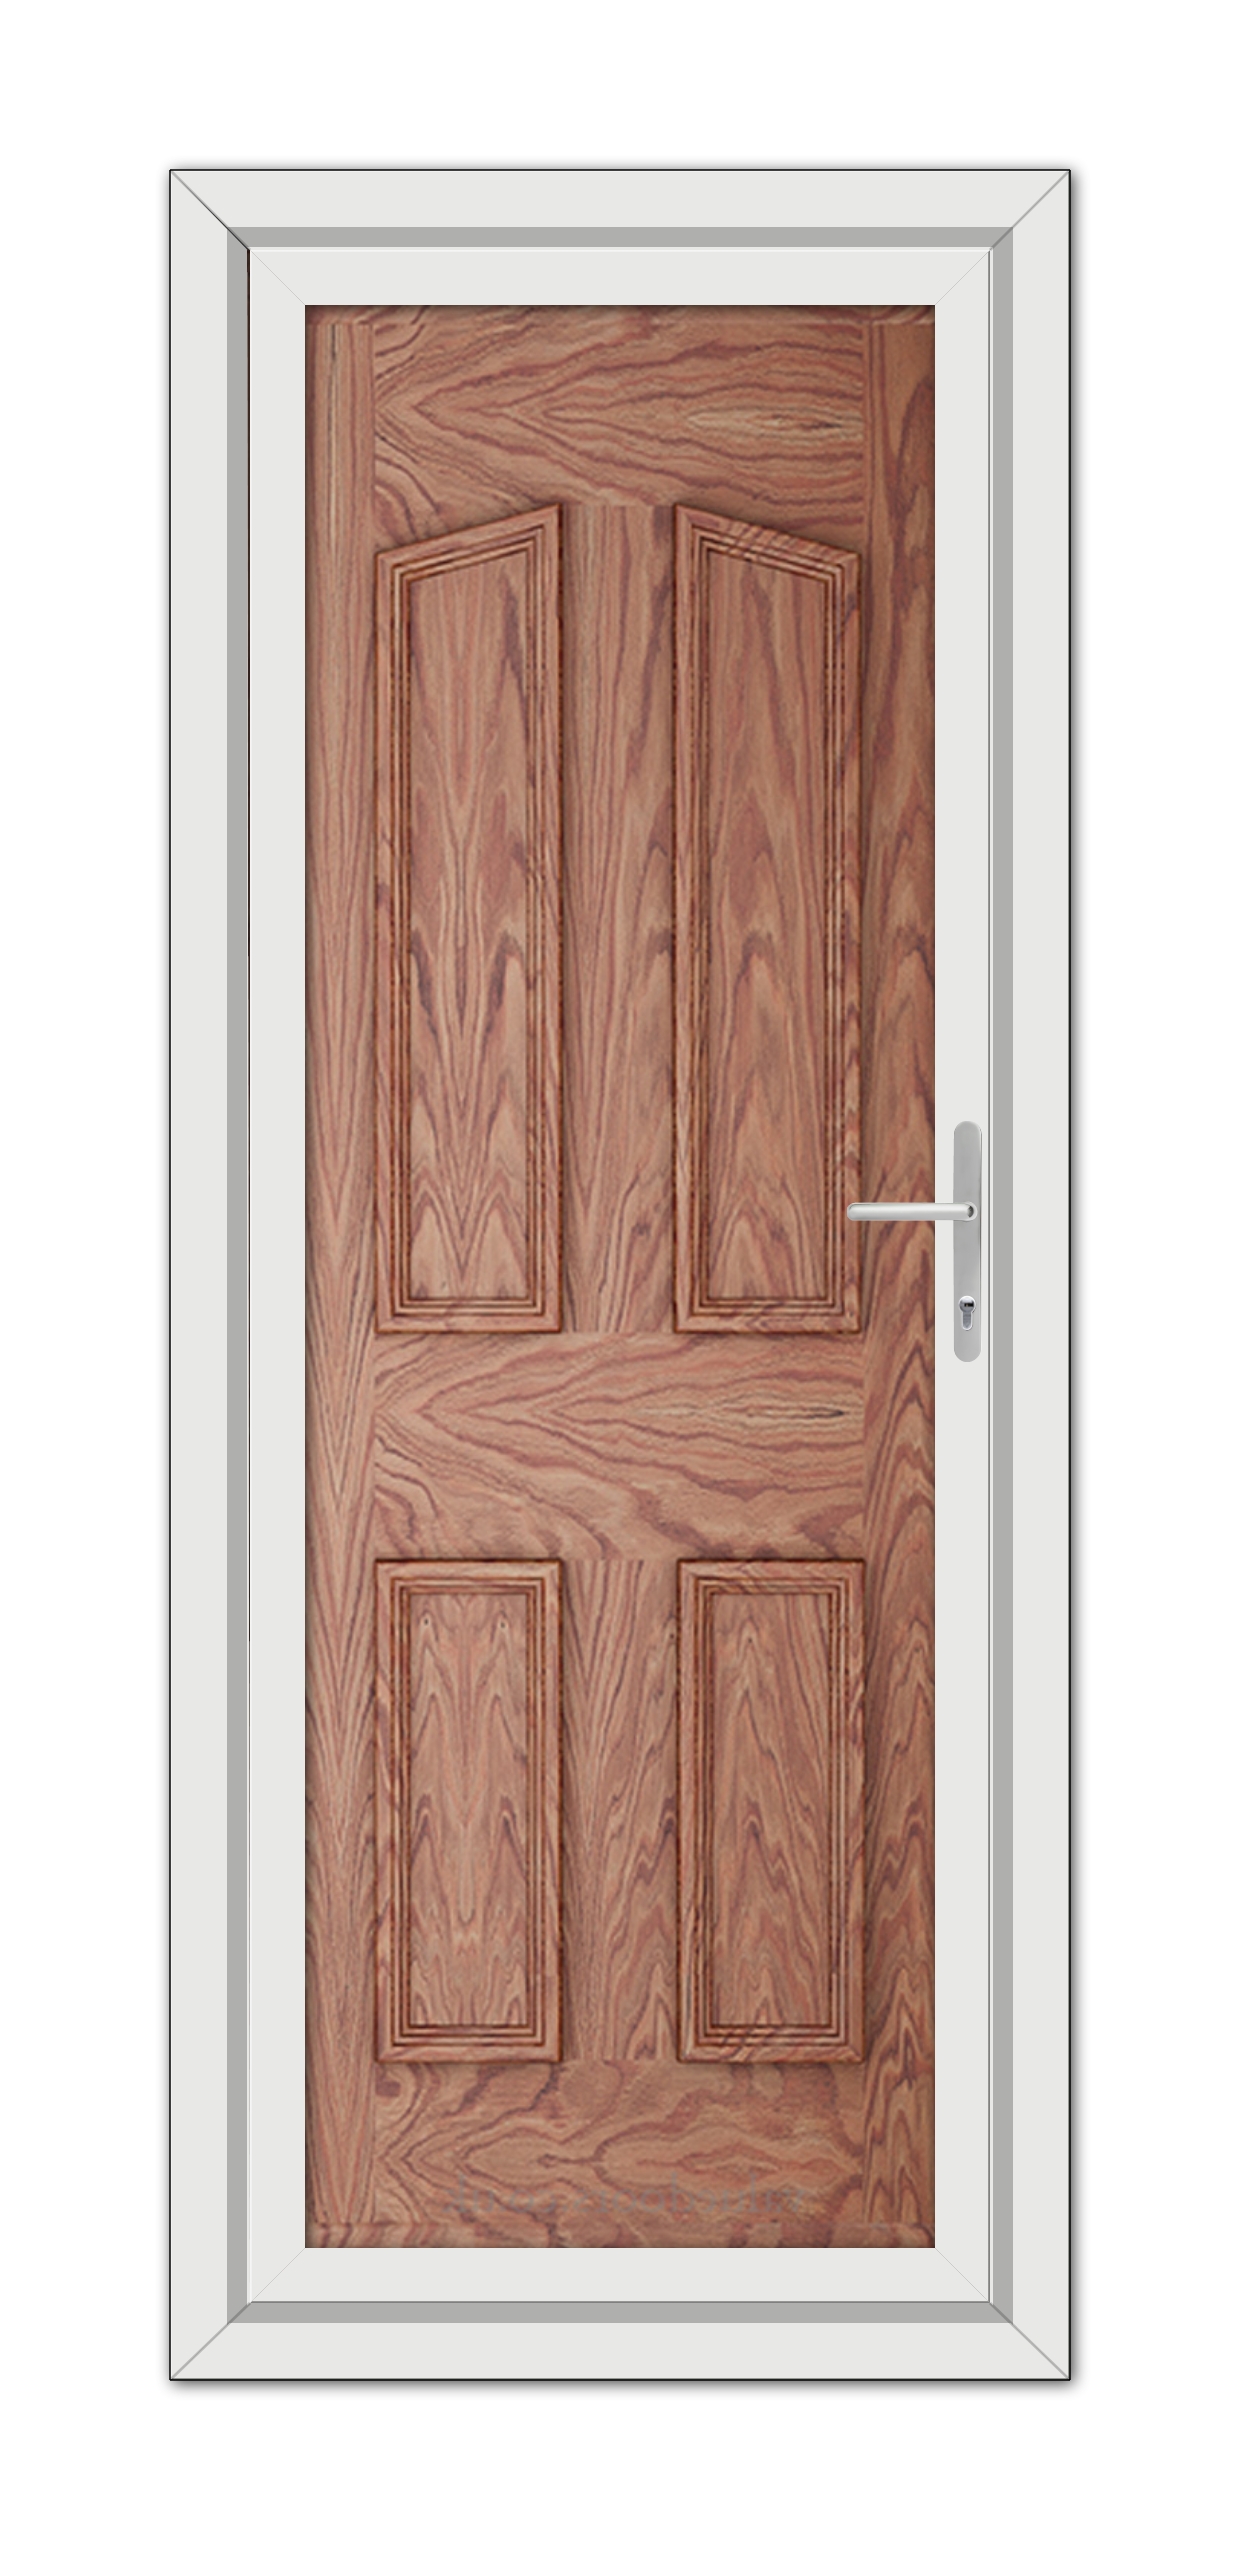 A close-up of a Solid Oak Kensington Solid uPVC Door.